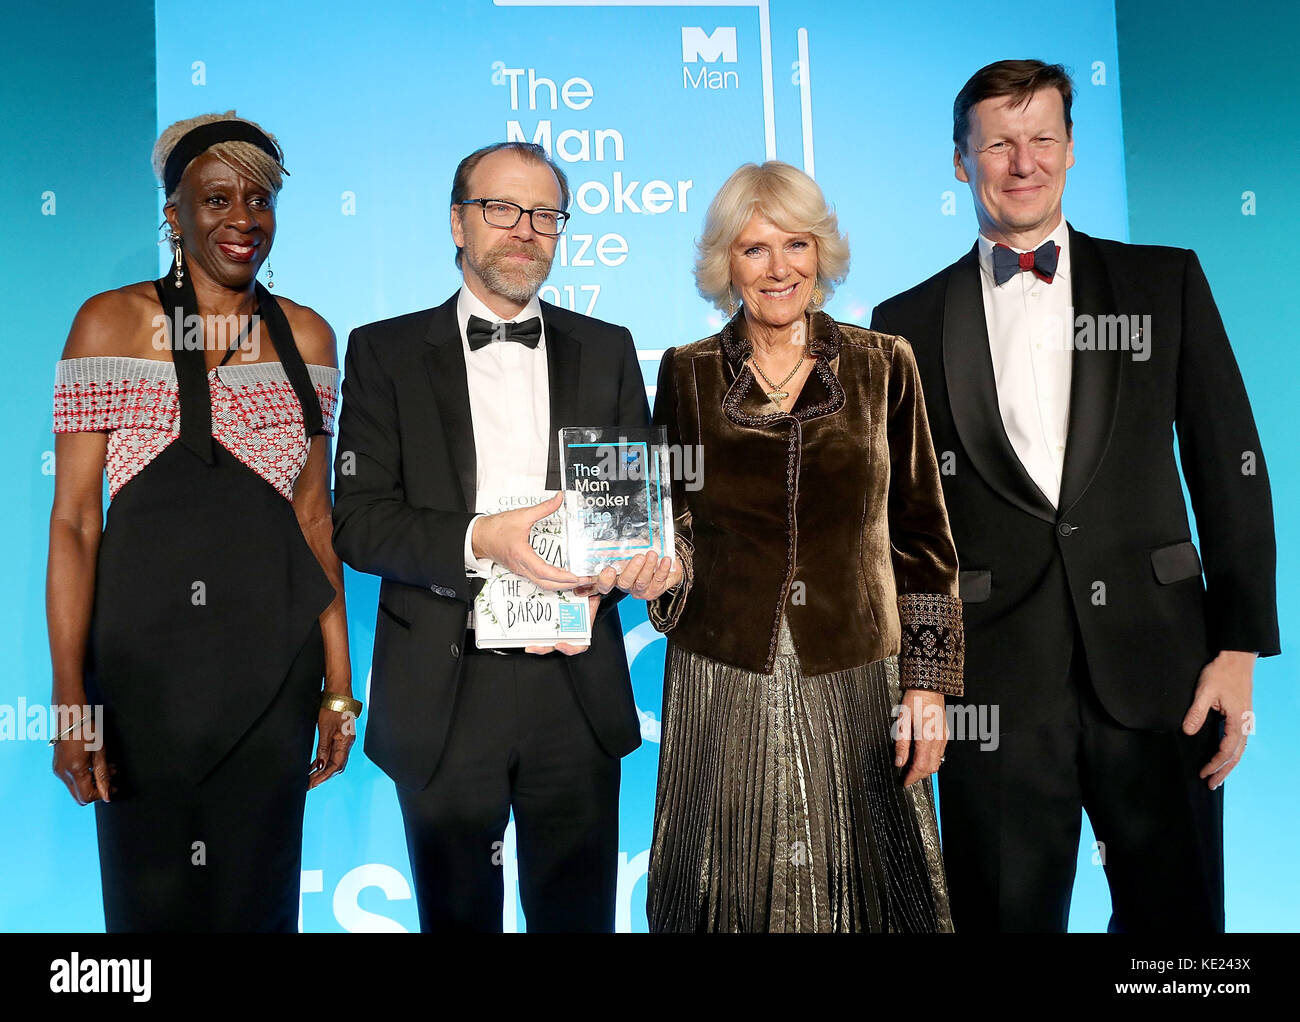 (Links-rechts) Baroness Lola Young, der Gewinner George Saunders, die Herzogin von Cornwall und Luke Ellis, CEO der man Group, auf der Bühne im Guildhall in London während der Preisverleihung des man Booker 2017. Stockfoto